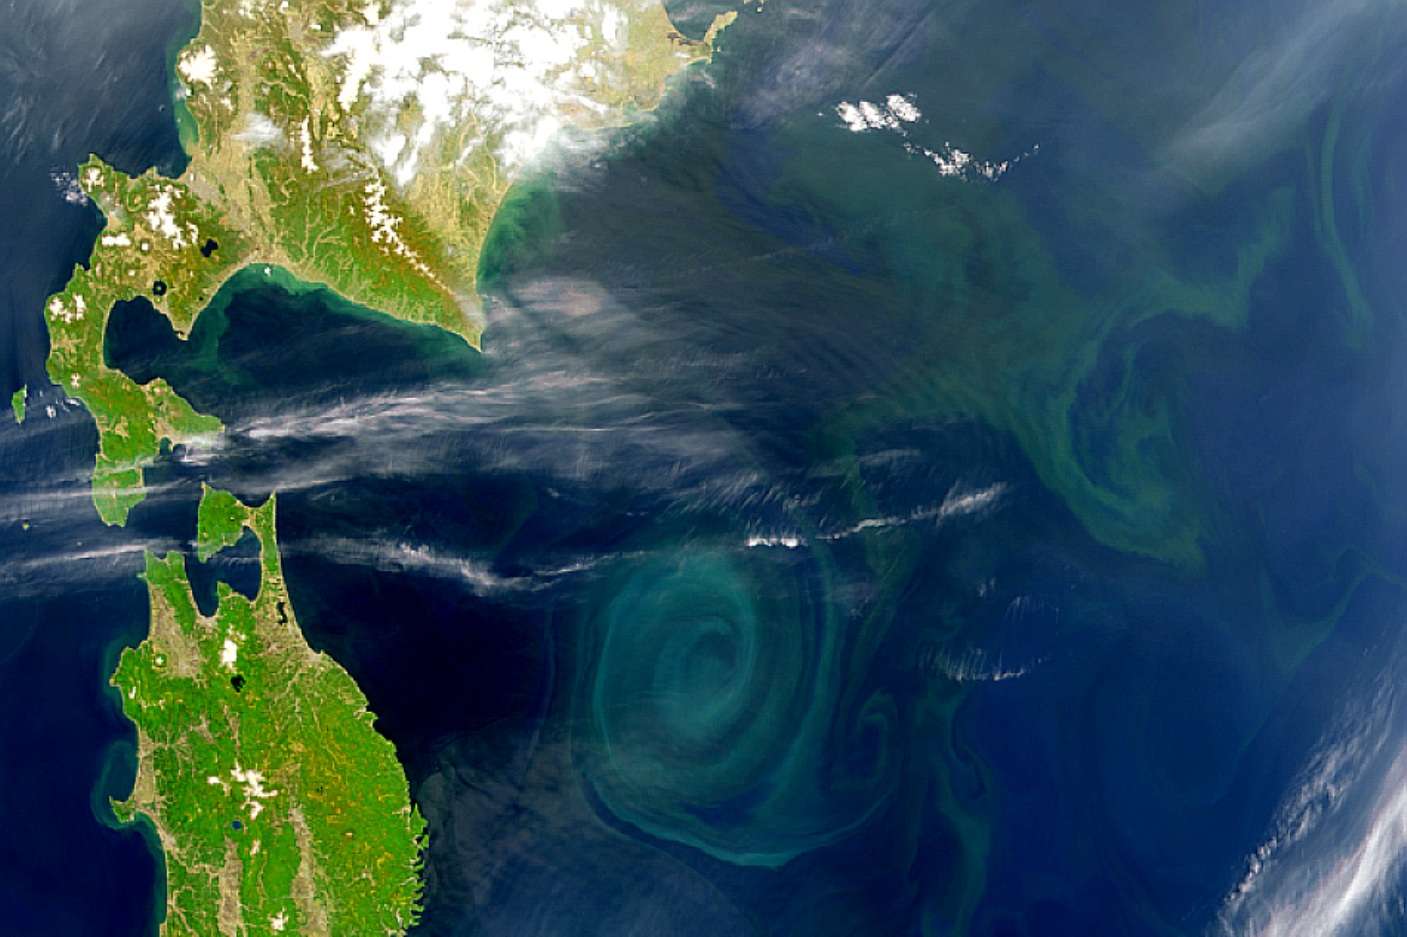 фото из космоса мусорного острова в тихом океане